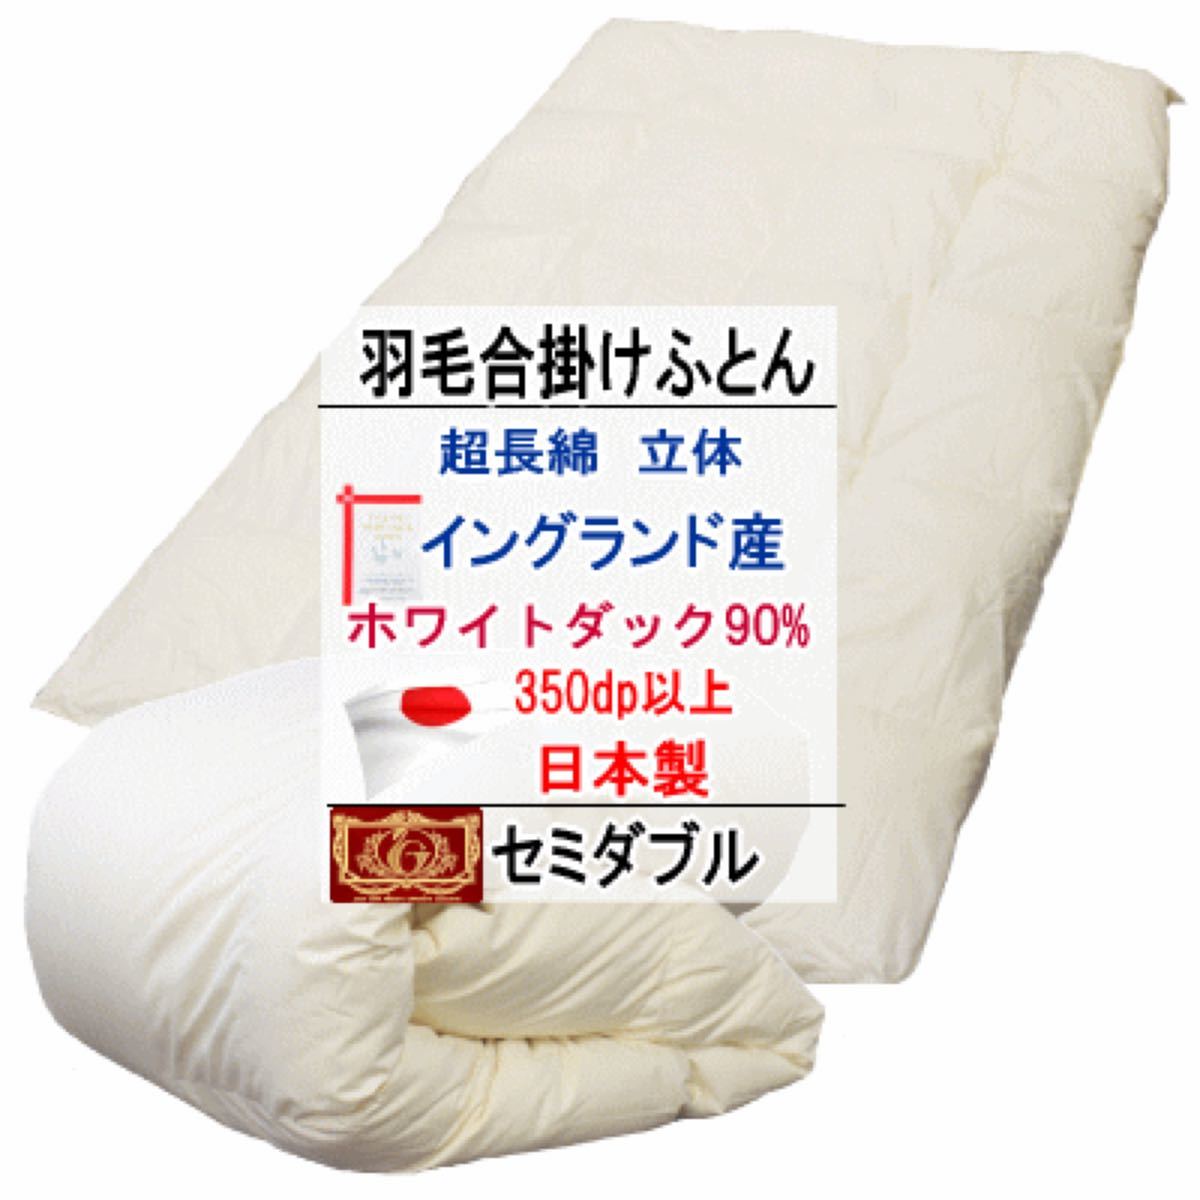 代引き不可 羽毛布団 ダブル超ロング ホワイトダック90% 日本製 